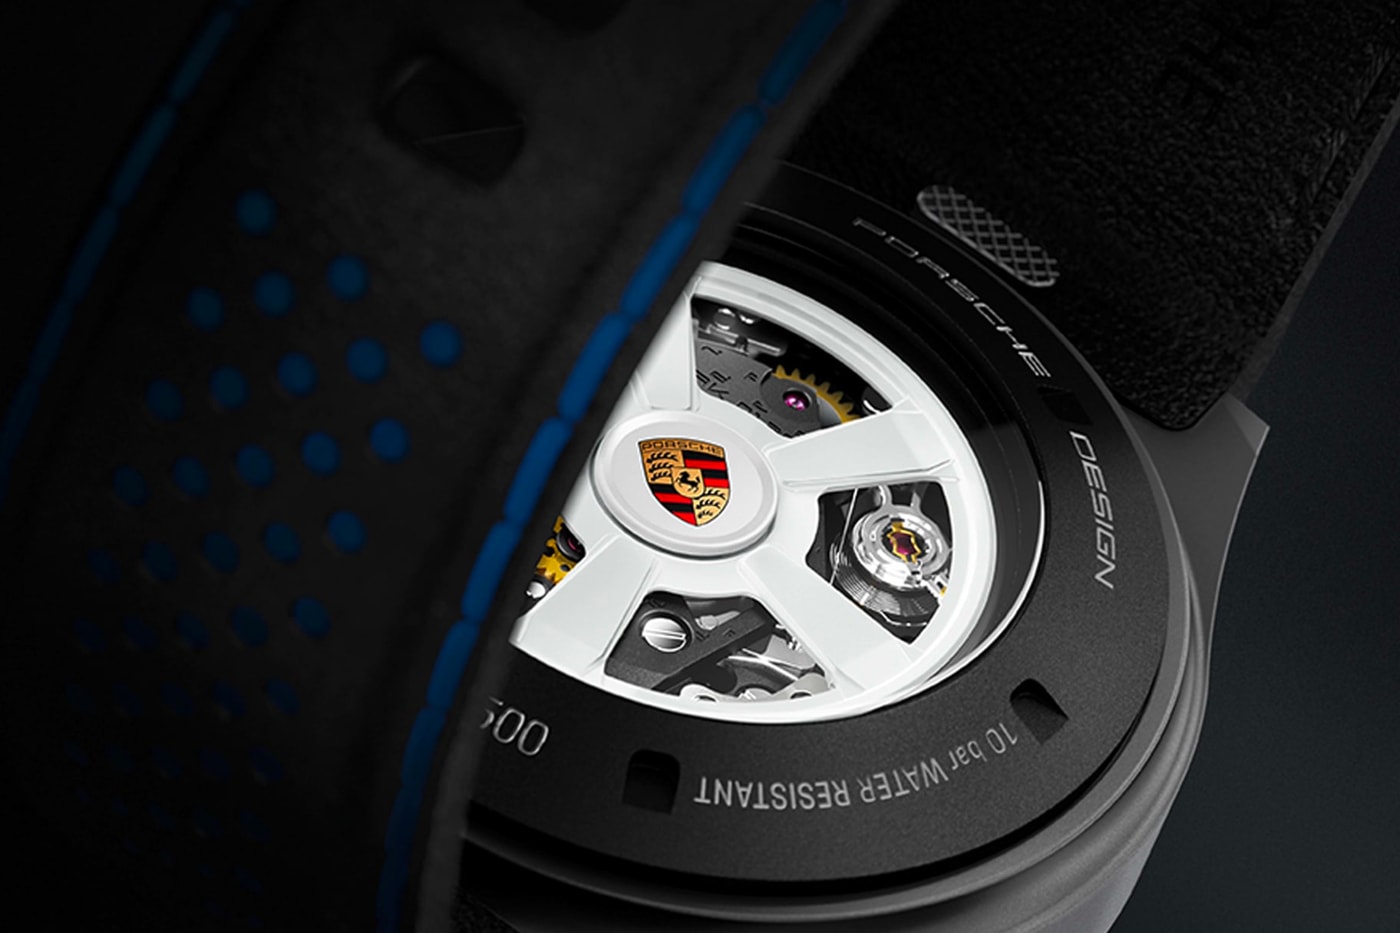 Porsche Design Chronograph 1 - 911 Dakar Watch